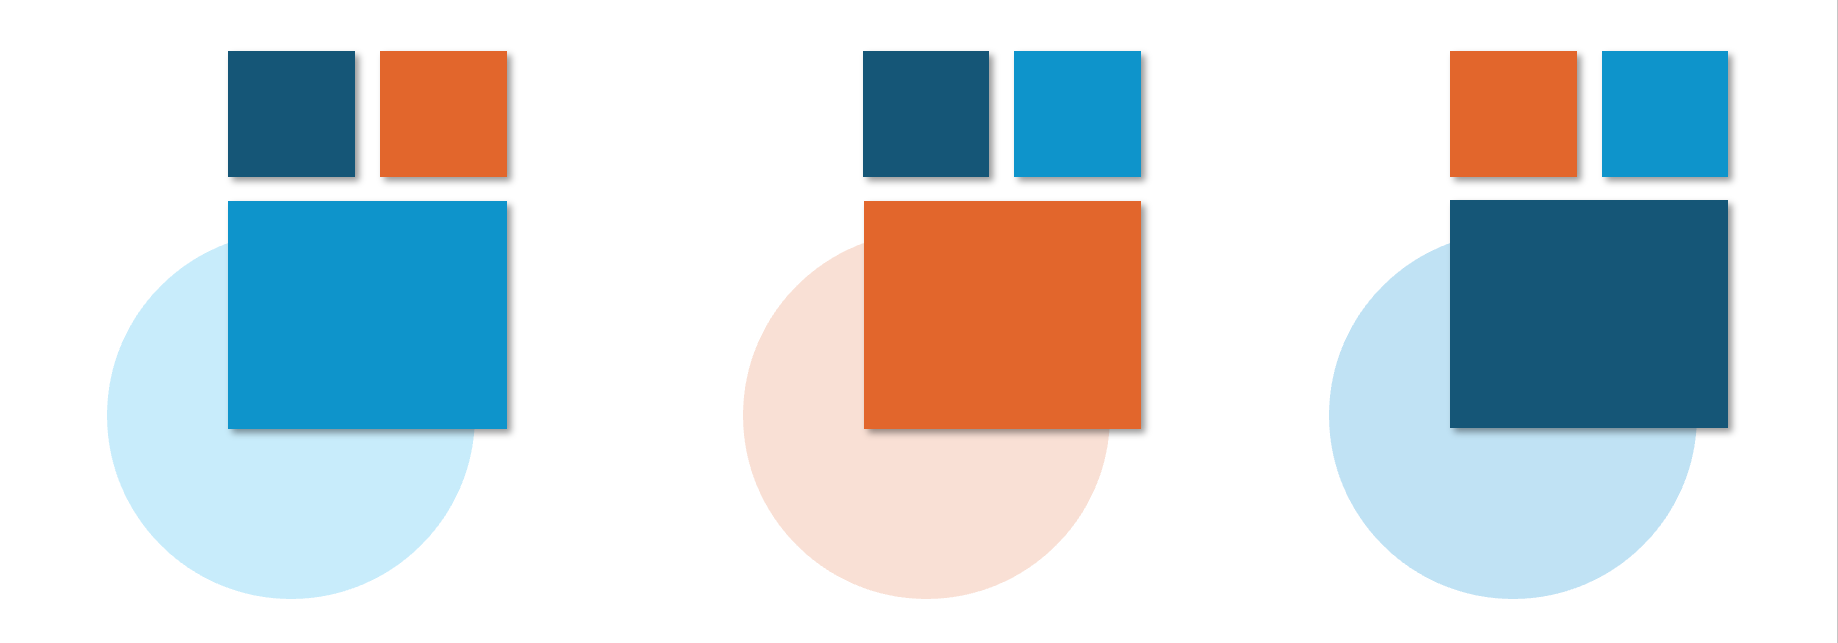 Drei Farbkombinationen aus den Farben Blau, Dunkelblau und Orange